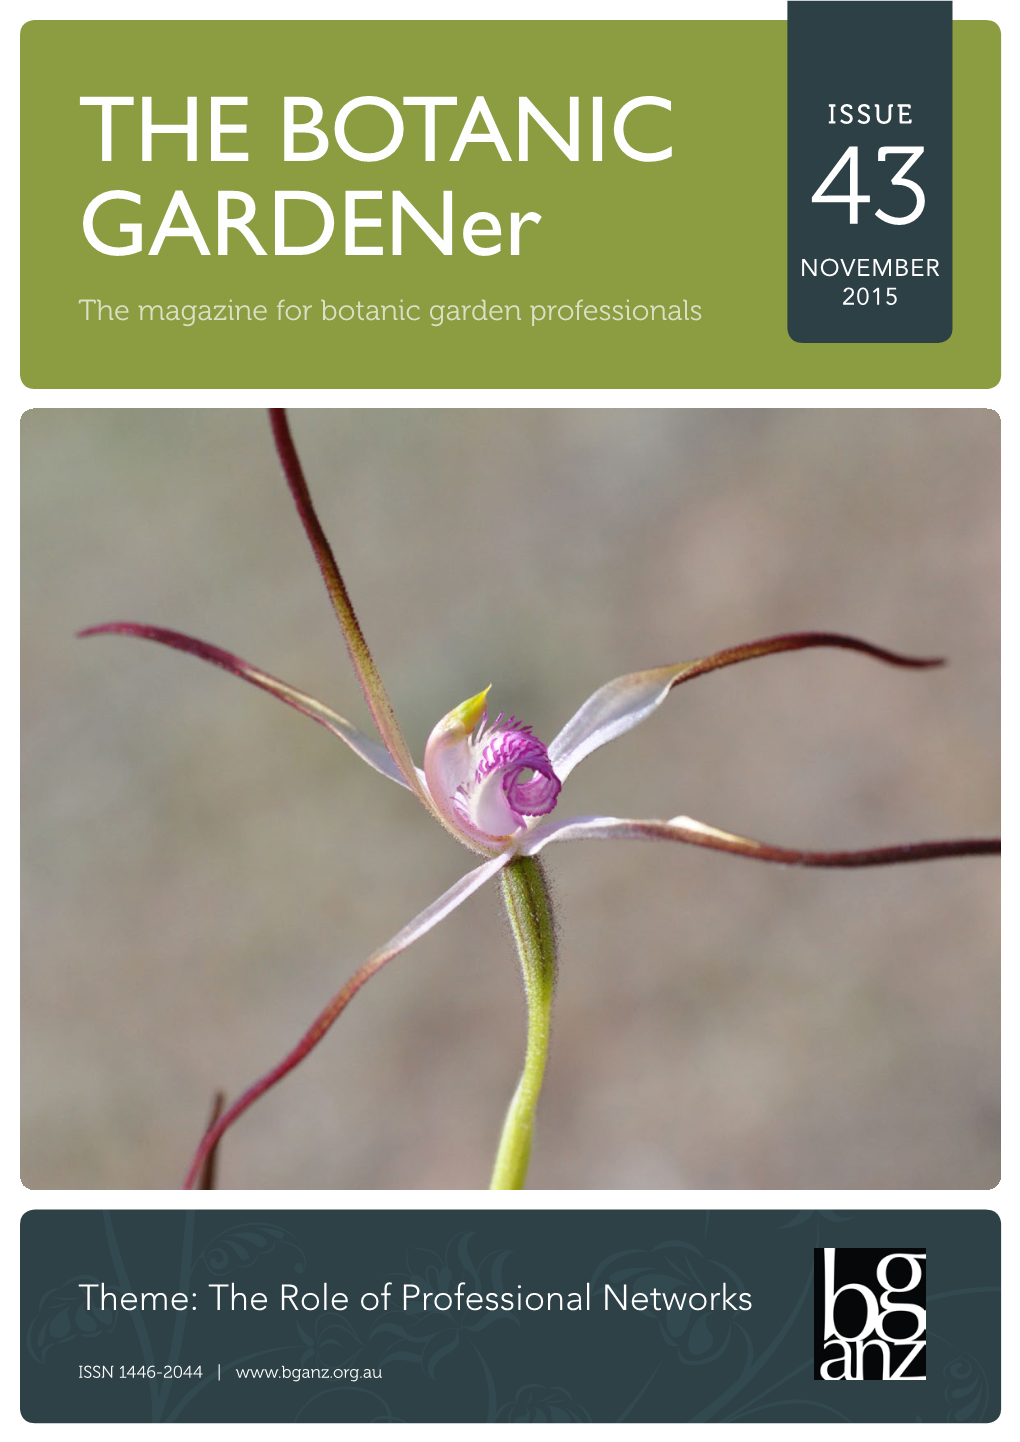 THE BOTANIC Gardener Issue 43 – November 2015